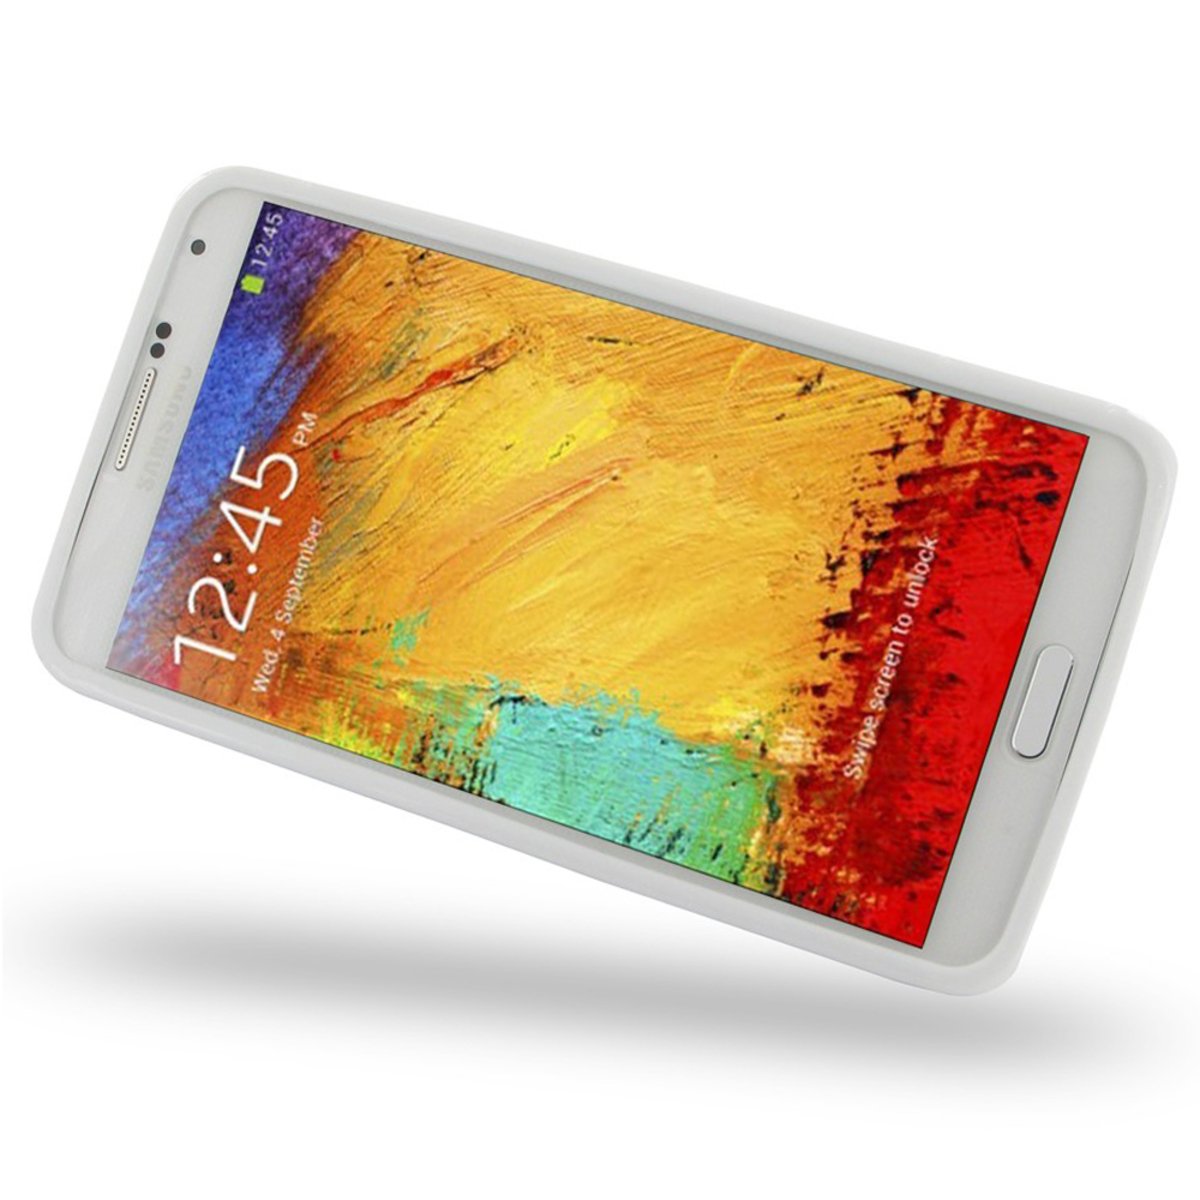 Samsung Galaxy Note 3 SM-N900 3G White